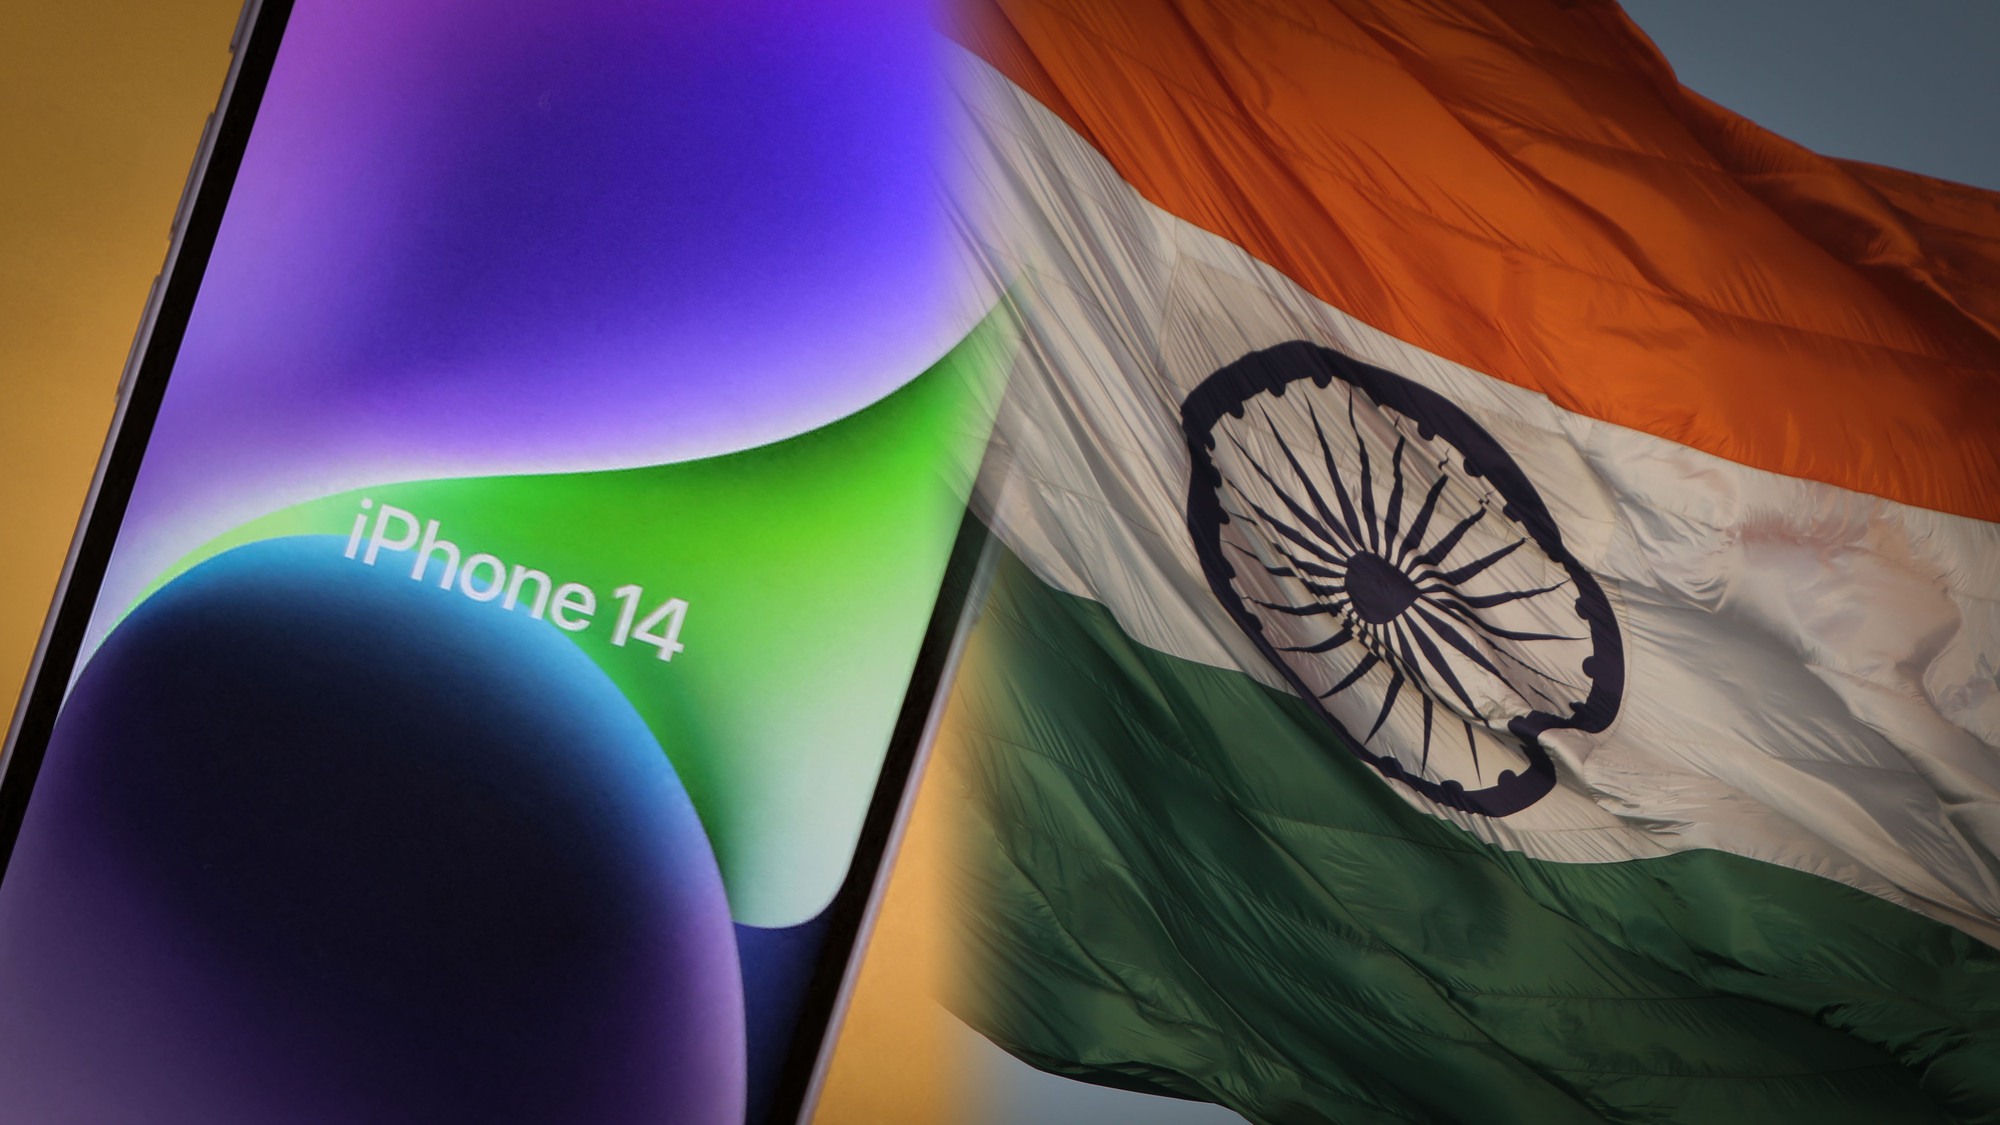 Sản xuất iPhone 14 tại Ấn Độ: Apple đã chọn Ấn Độ làm địa điểm sản xuất iPhone 14, đem đến nhiều cơ hội cho nền kinh tế, tạo ra đánh giá tích cực về khả năng sản xuất và phát triển của Ấn Độ. Nhờ việc này, ta có thể hy vọng rằng trong tương lai sẽ có nhiều hãng công nghệ khác chọn Ấn Độ làm trung tâm sản xuất của mình.